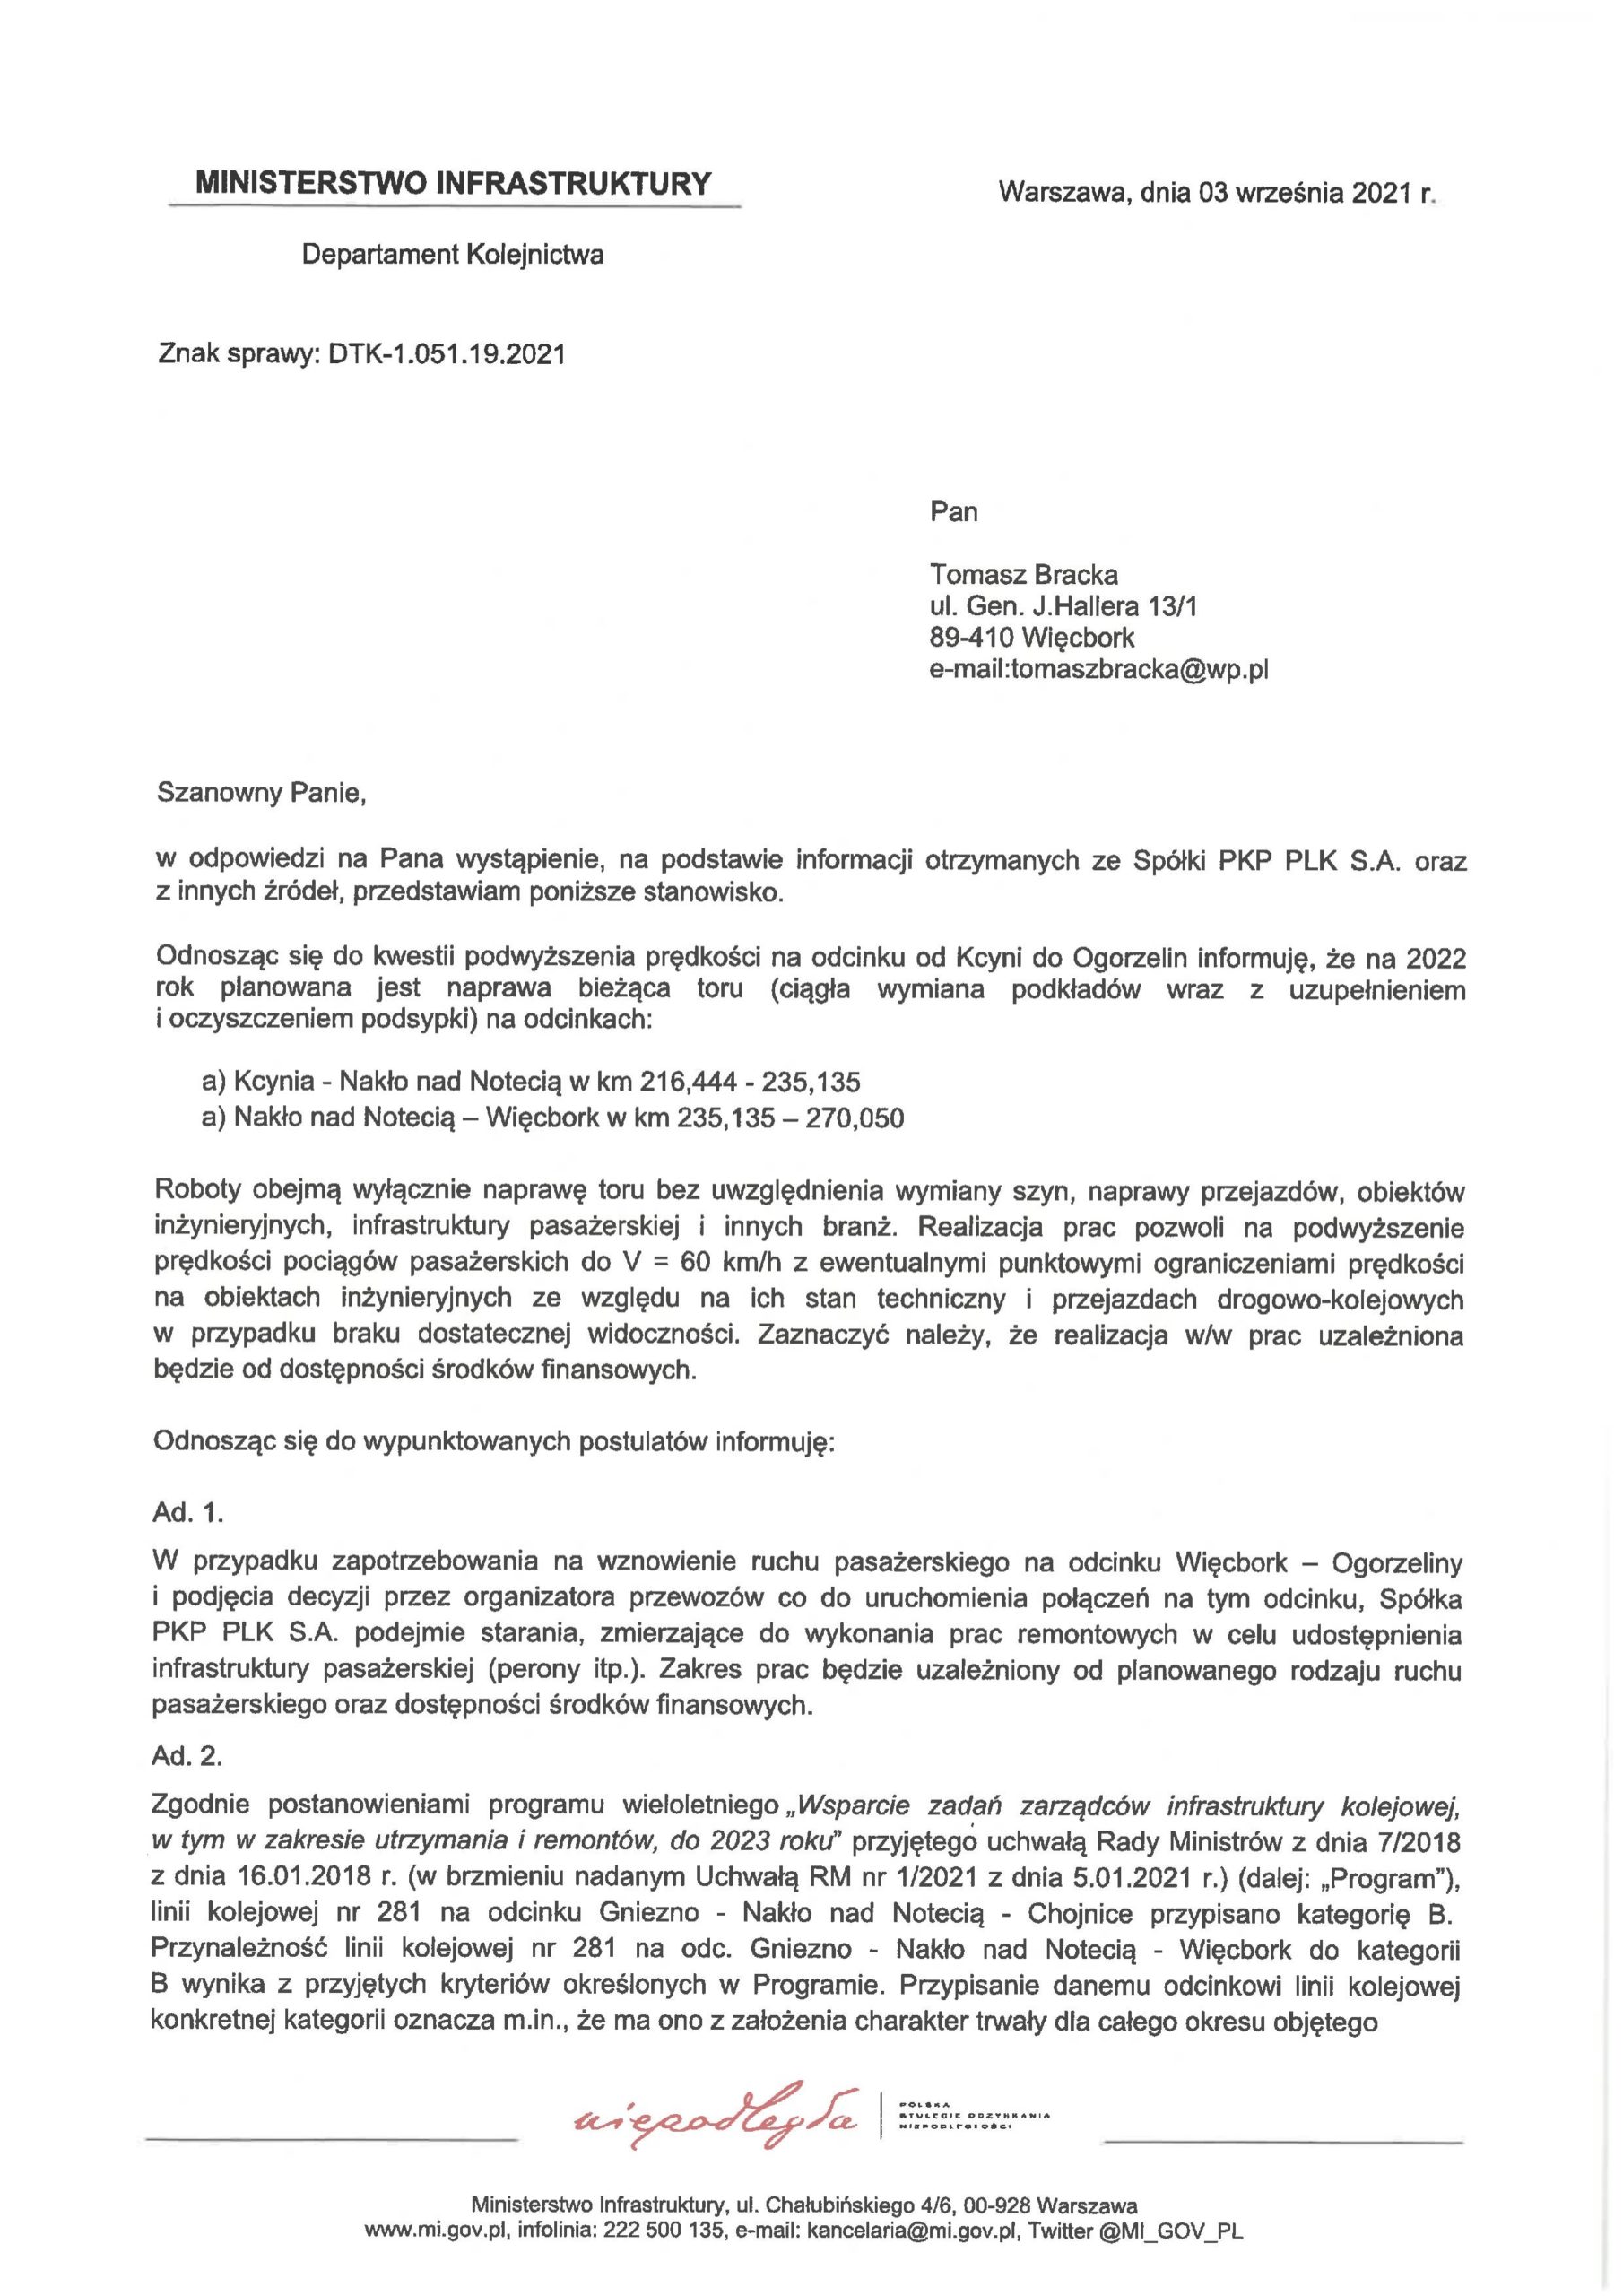 Z ogromną satysfakcją oznajmiam za załączonym pismem, że dziś Minister Infrastruktury potwierdził mi po 20 latach mojej walki o uratowanie linii kolejowej 281 jej remont od 2022 roku na całym odcinku: Oleśnica - Gniezno - Kcynia - Więcbork - Chojnice